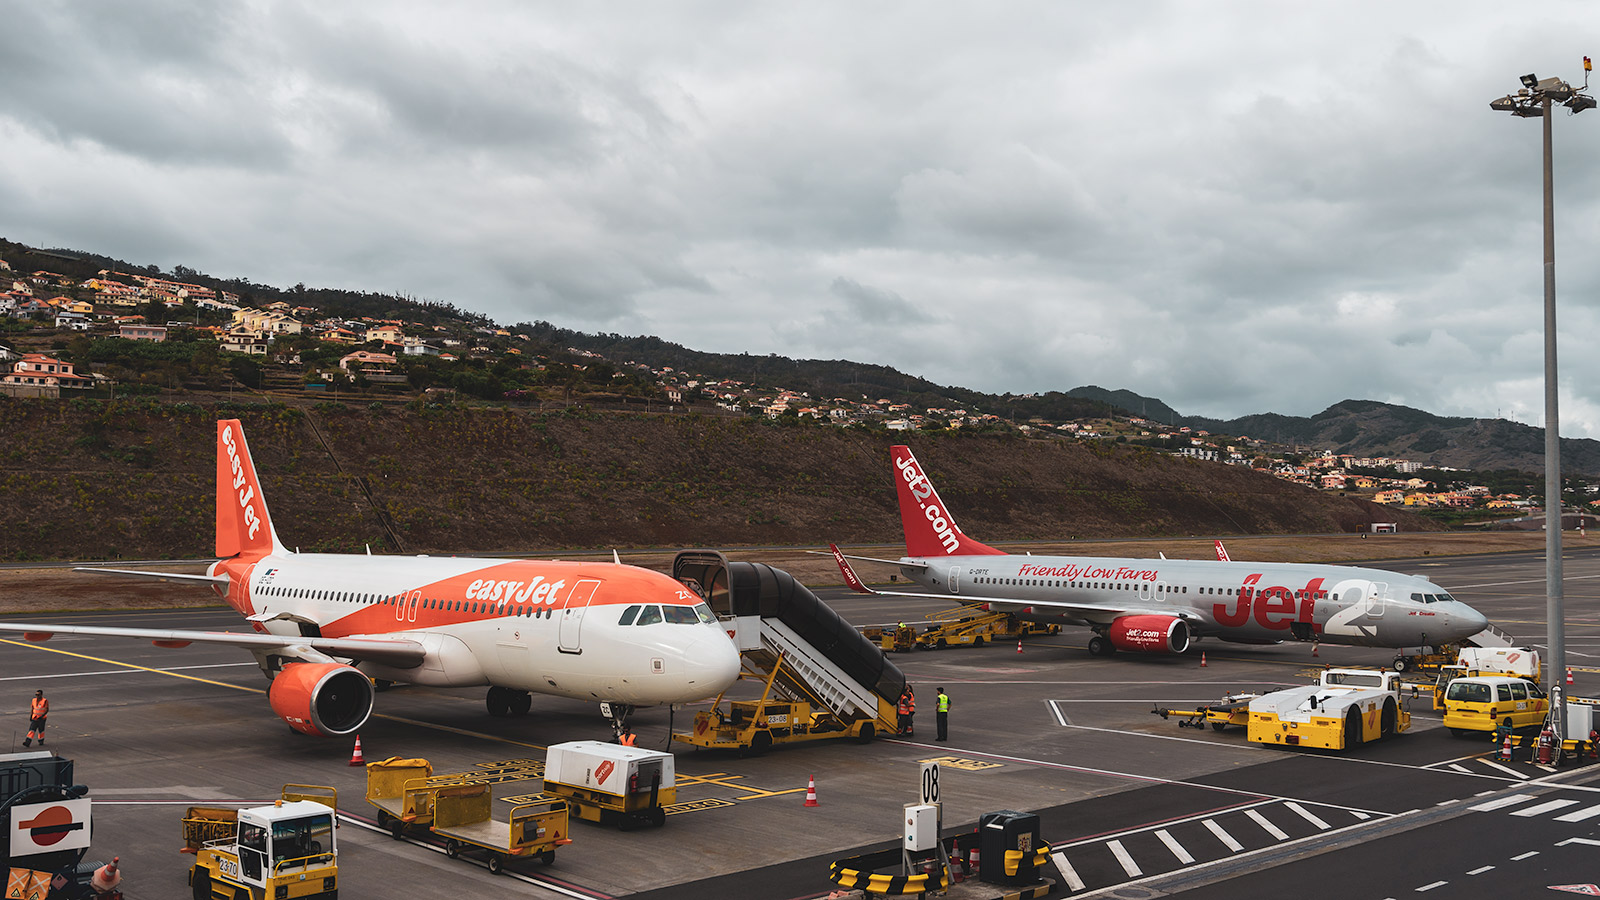 Madeiran lentokenttä tarjoaa loistavat mahdollisuudet lentokoneiden katseluun lähietäisyydeltä terassin ansiosta